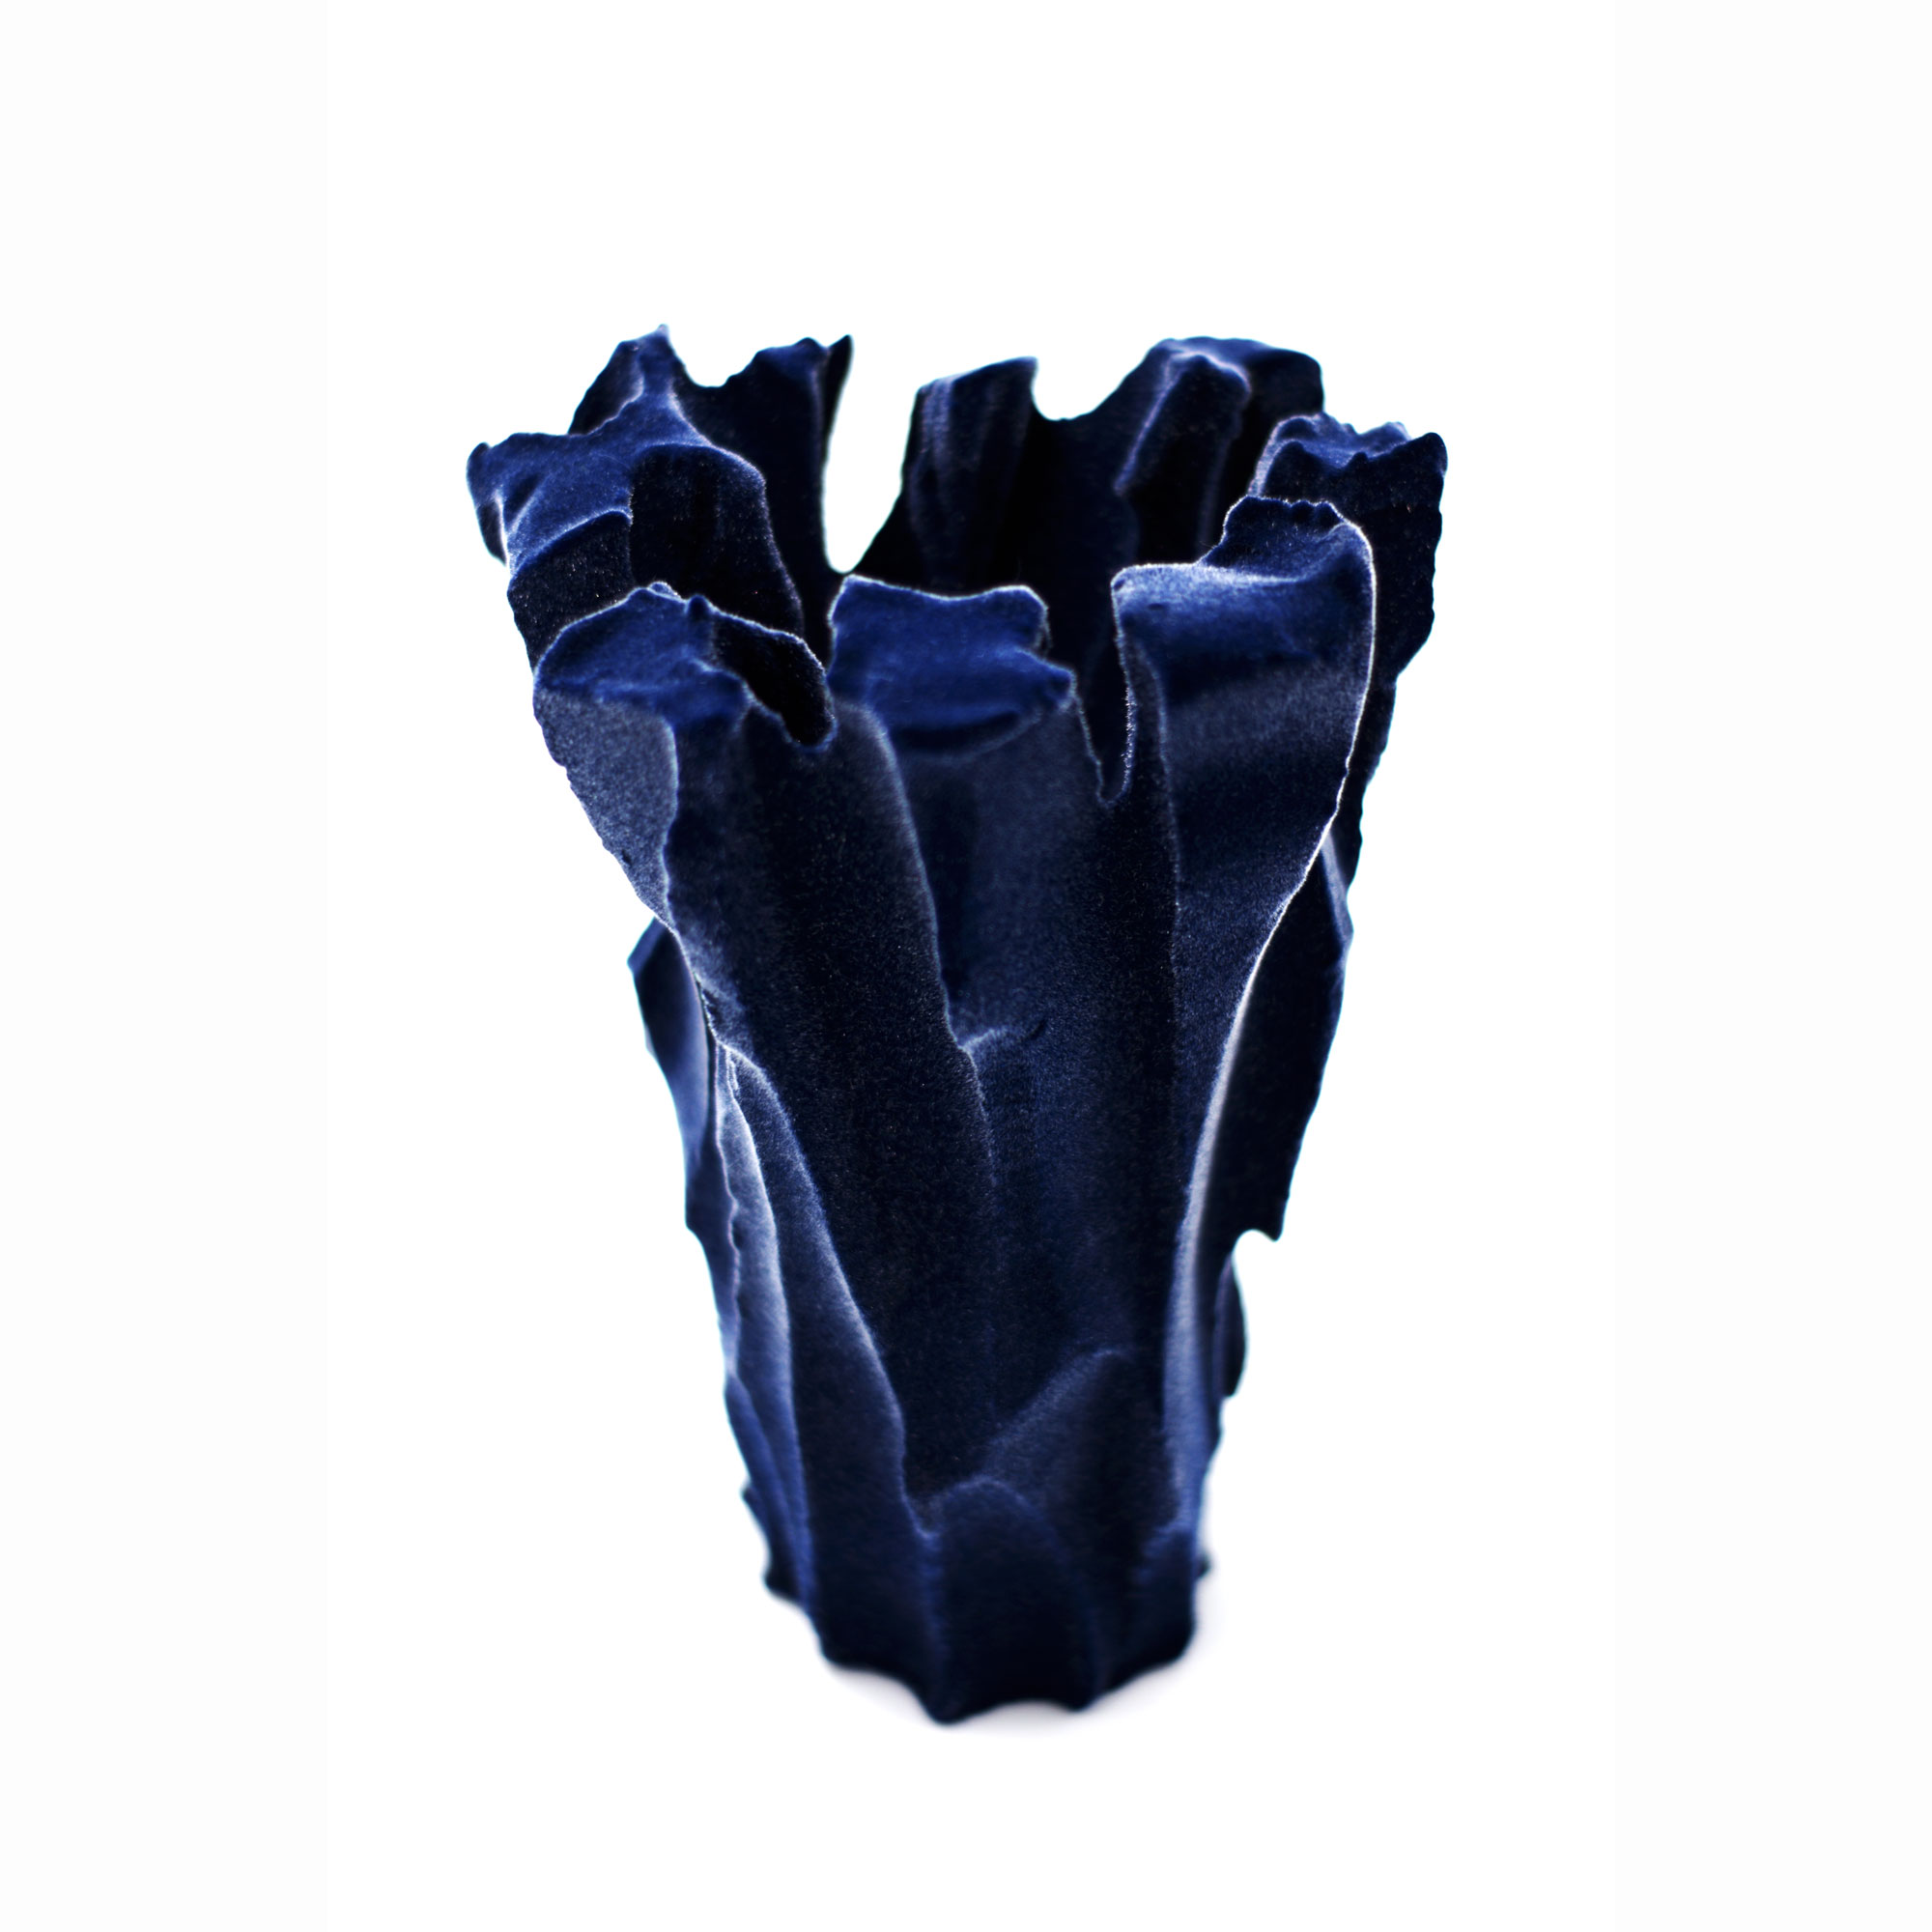 Michal Fargo - Soft Accents in Blue -
Façonnage à la main et flocage. Grès et fibre - 18 x 18 x 25 cm - 2020